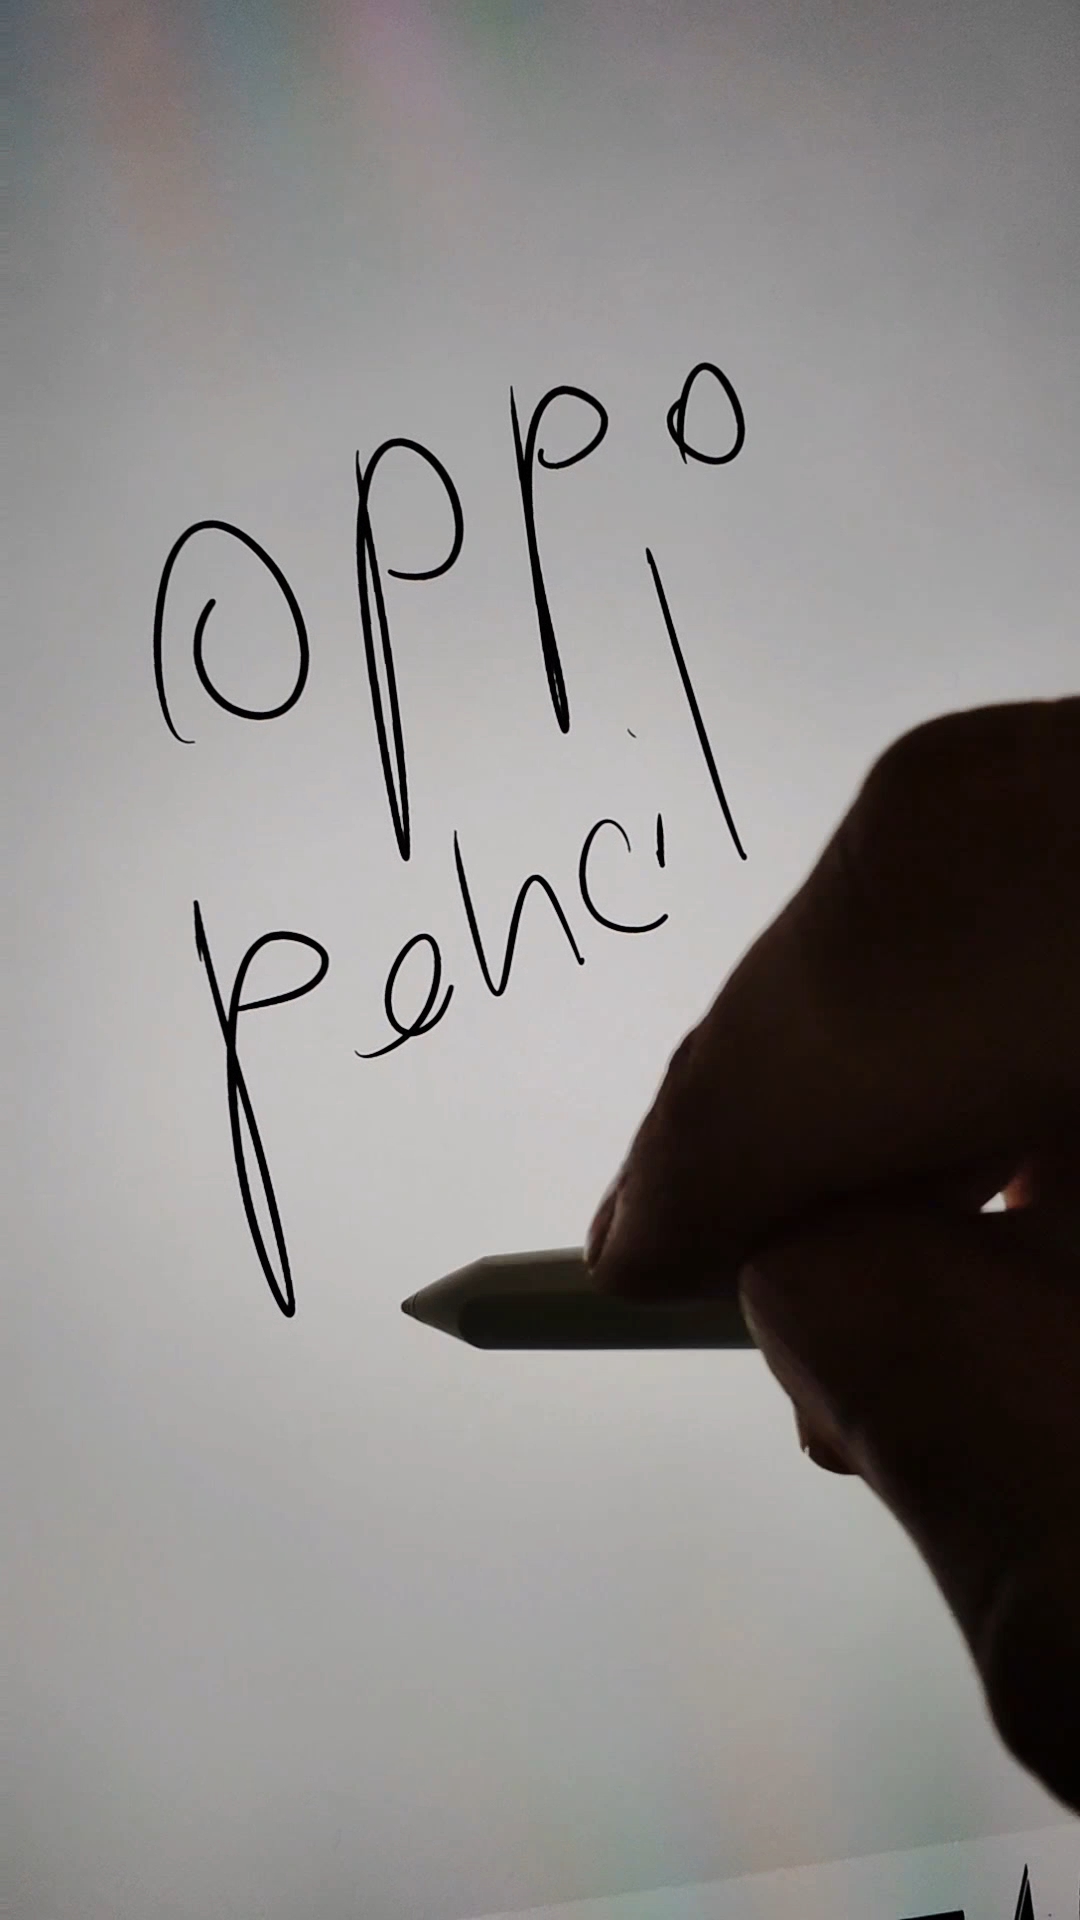 Oppo Pencil